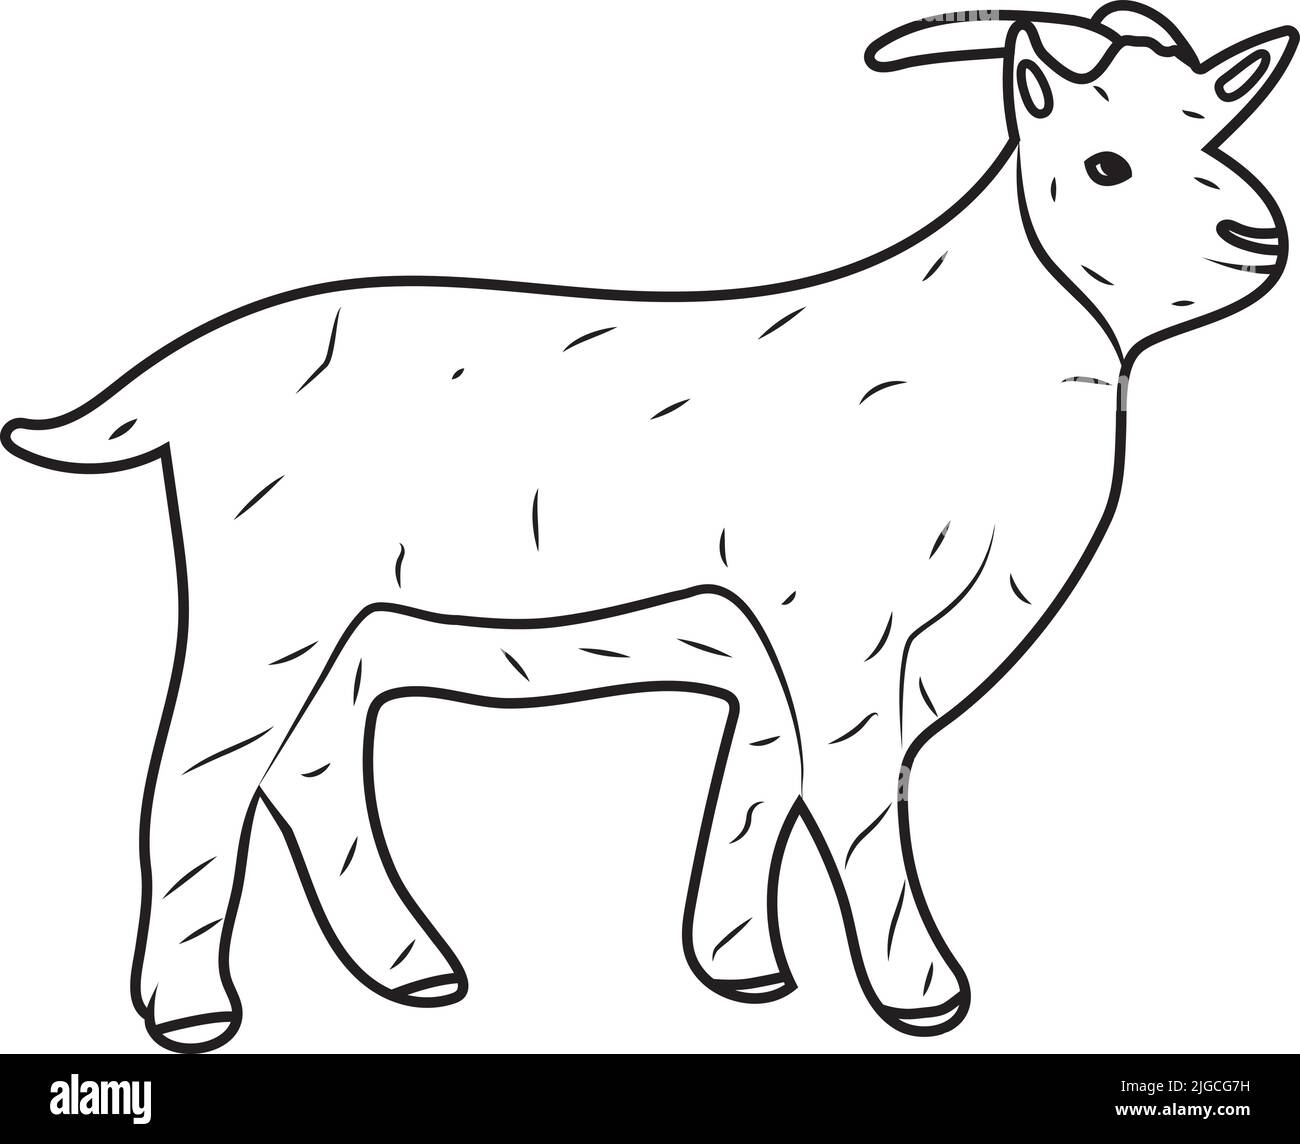 Bauernhof Haustier Ziege Vektor Illustration Rinder, Milch und Ziegenfleisch, ein Bauernhof gehörnte Tier für Web-Print und Apps Stock Vektor